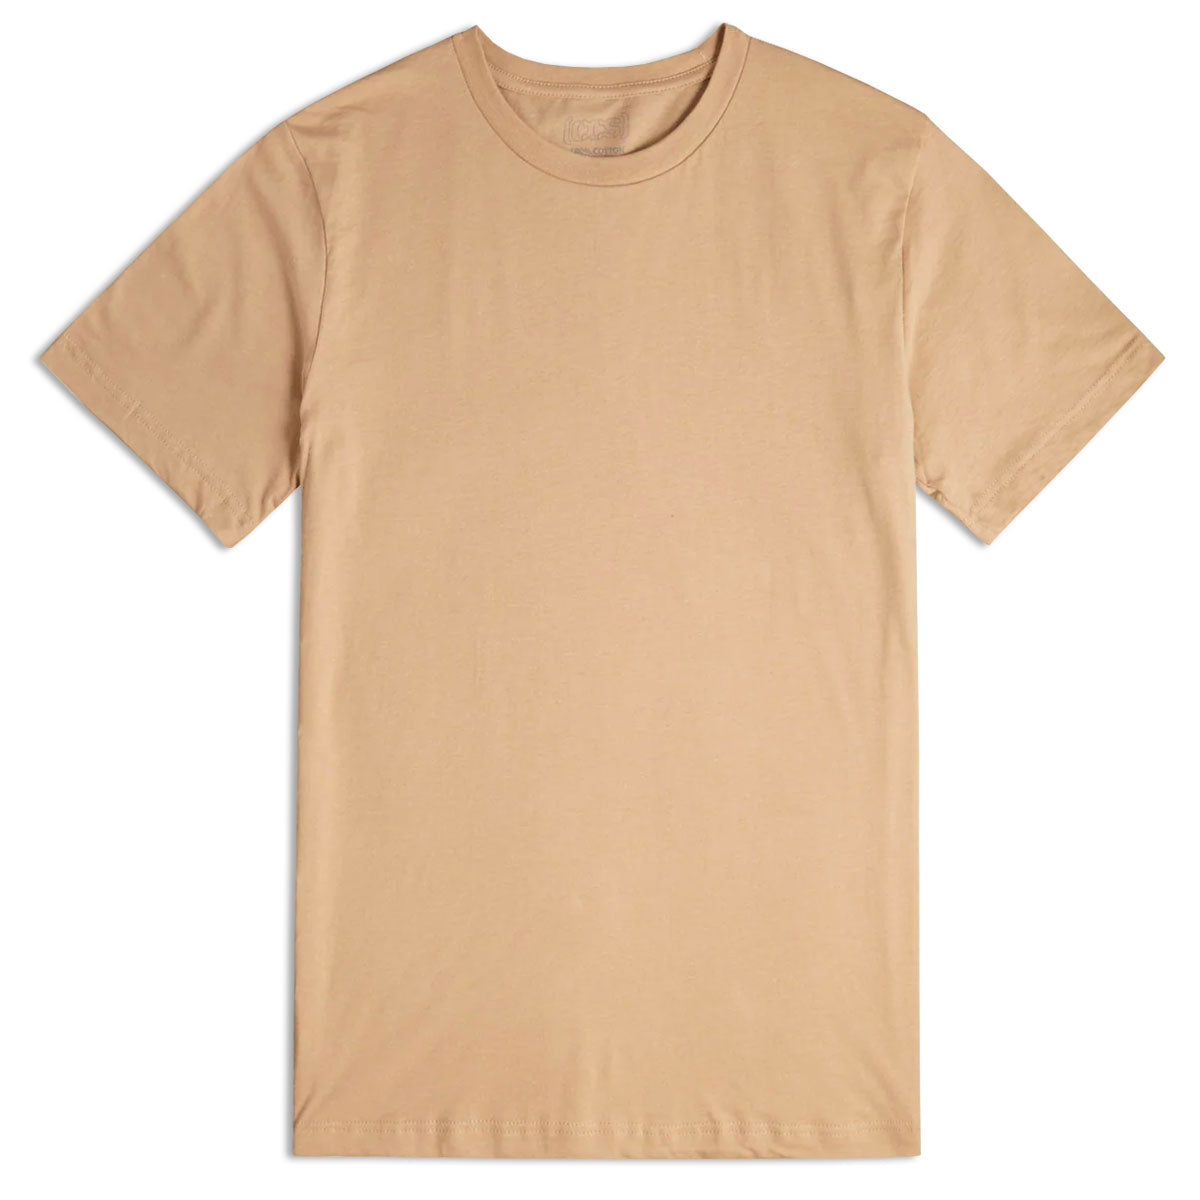 CCS Basis T-Shirt - Tan image 1